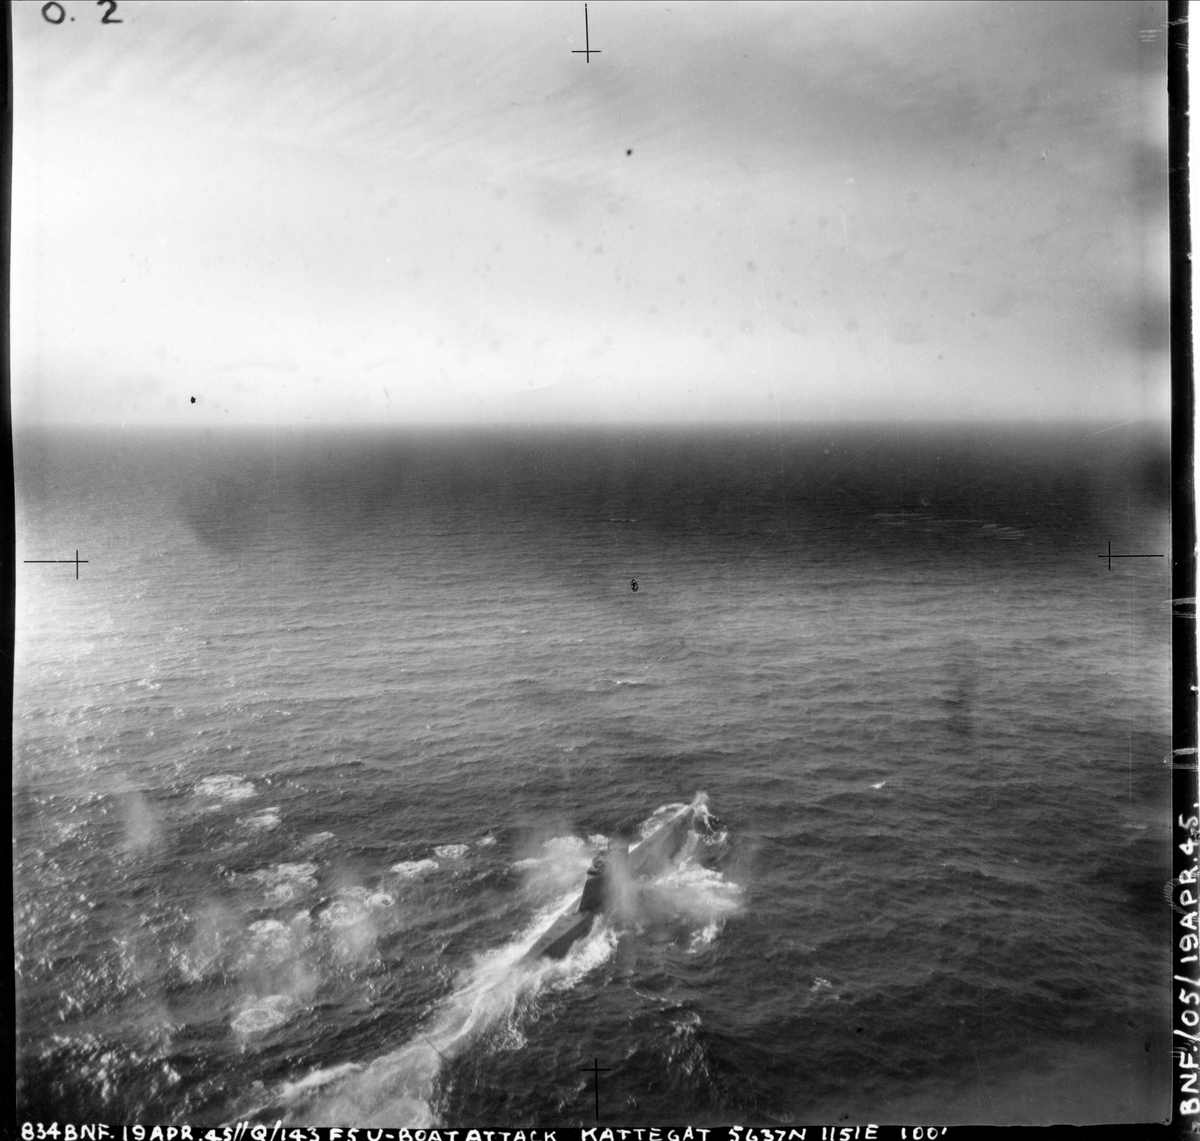 143 skvadronen angriper en ubåt i Kattegat, 19. april 1945.